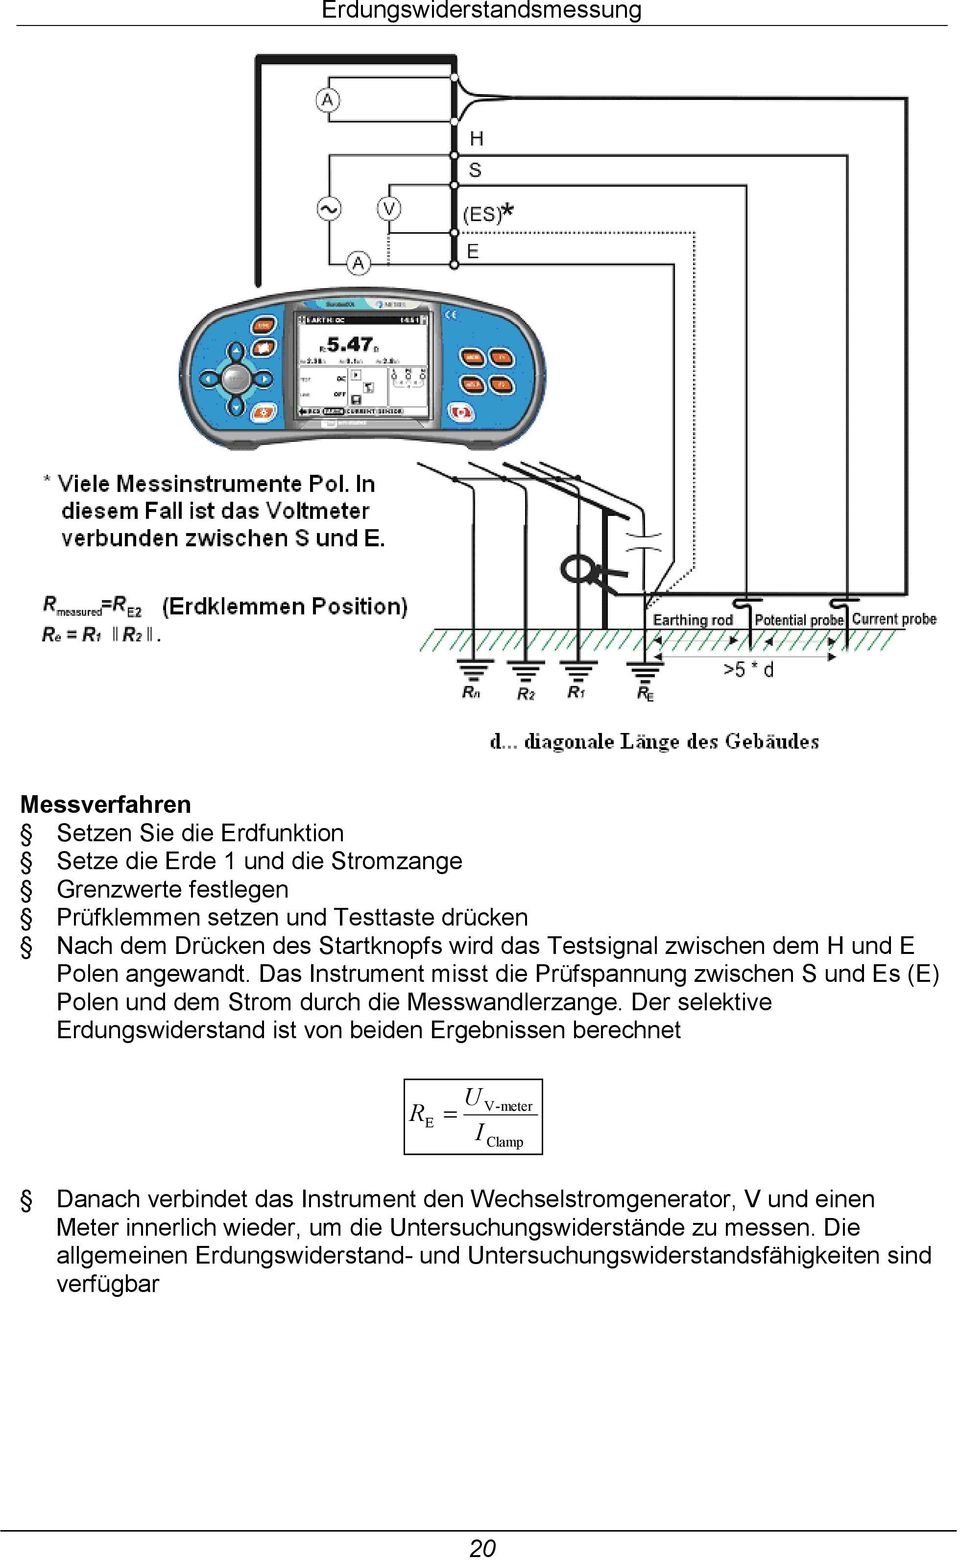 Das Instrument misst die Prüfspannung zwischen S und Es (E) Polen und dem Strom durch die Messwandlerzange.